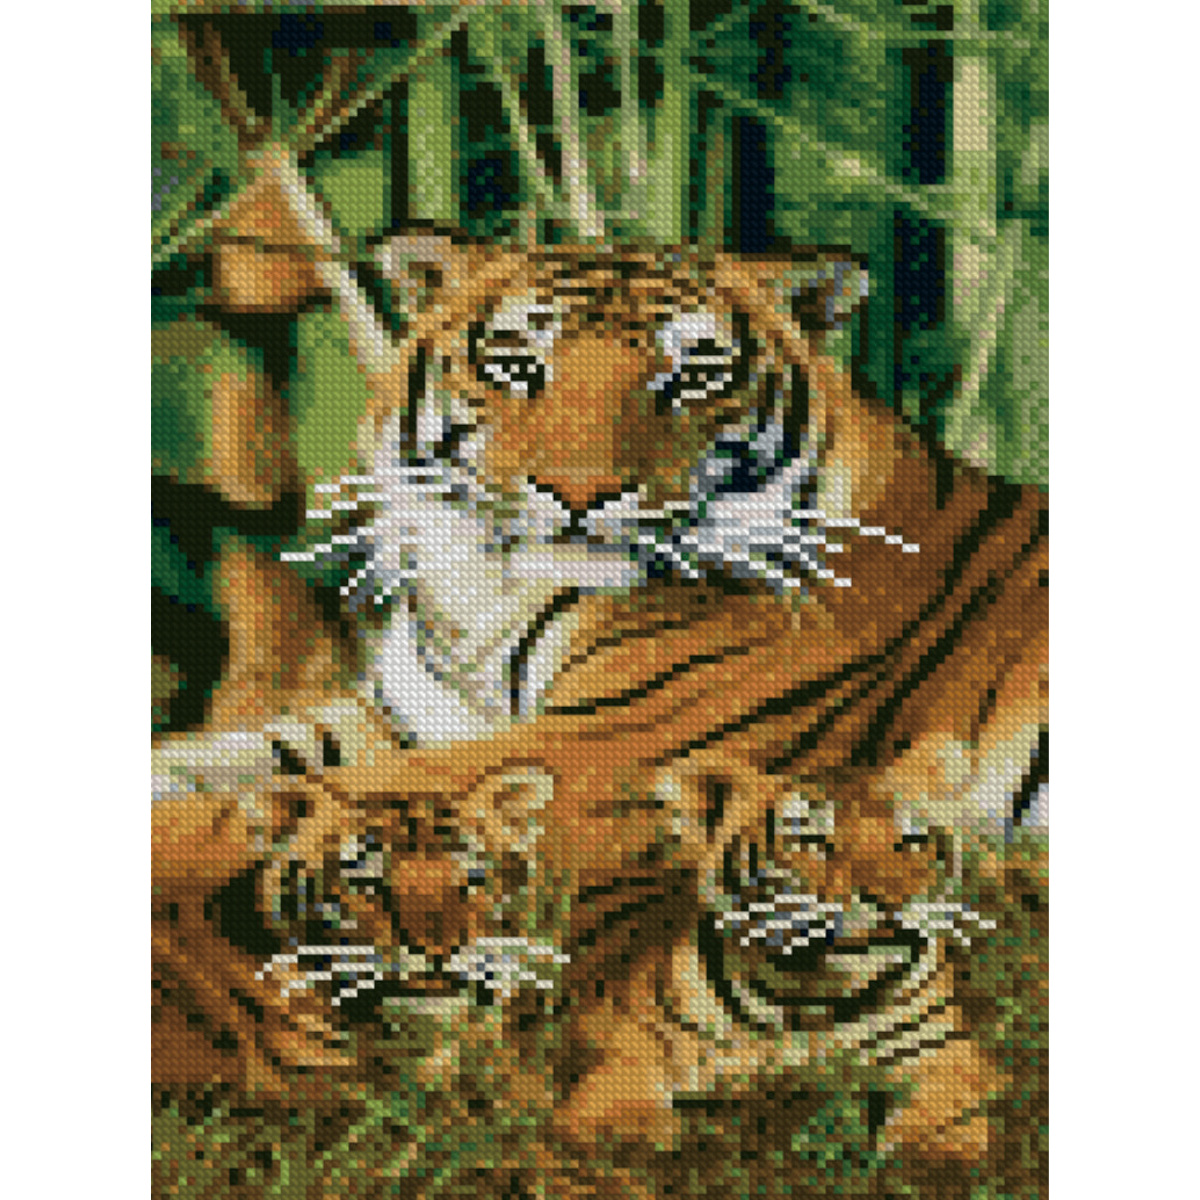 Diamond mosaic Premium HX068 "Tigers among bamboo", size 30x40 cm